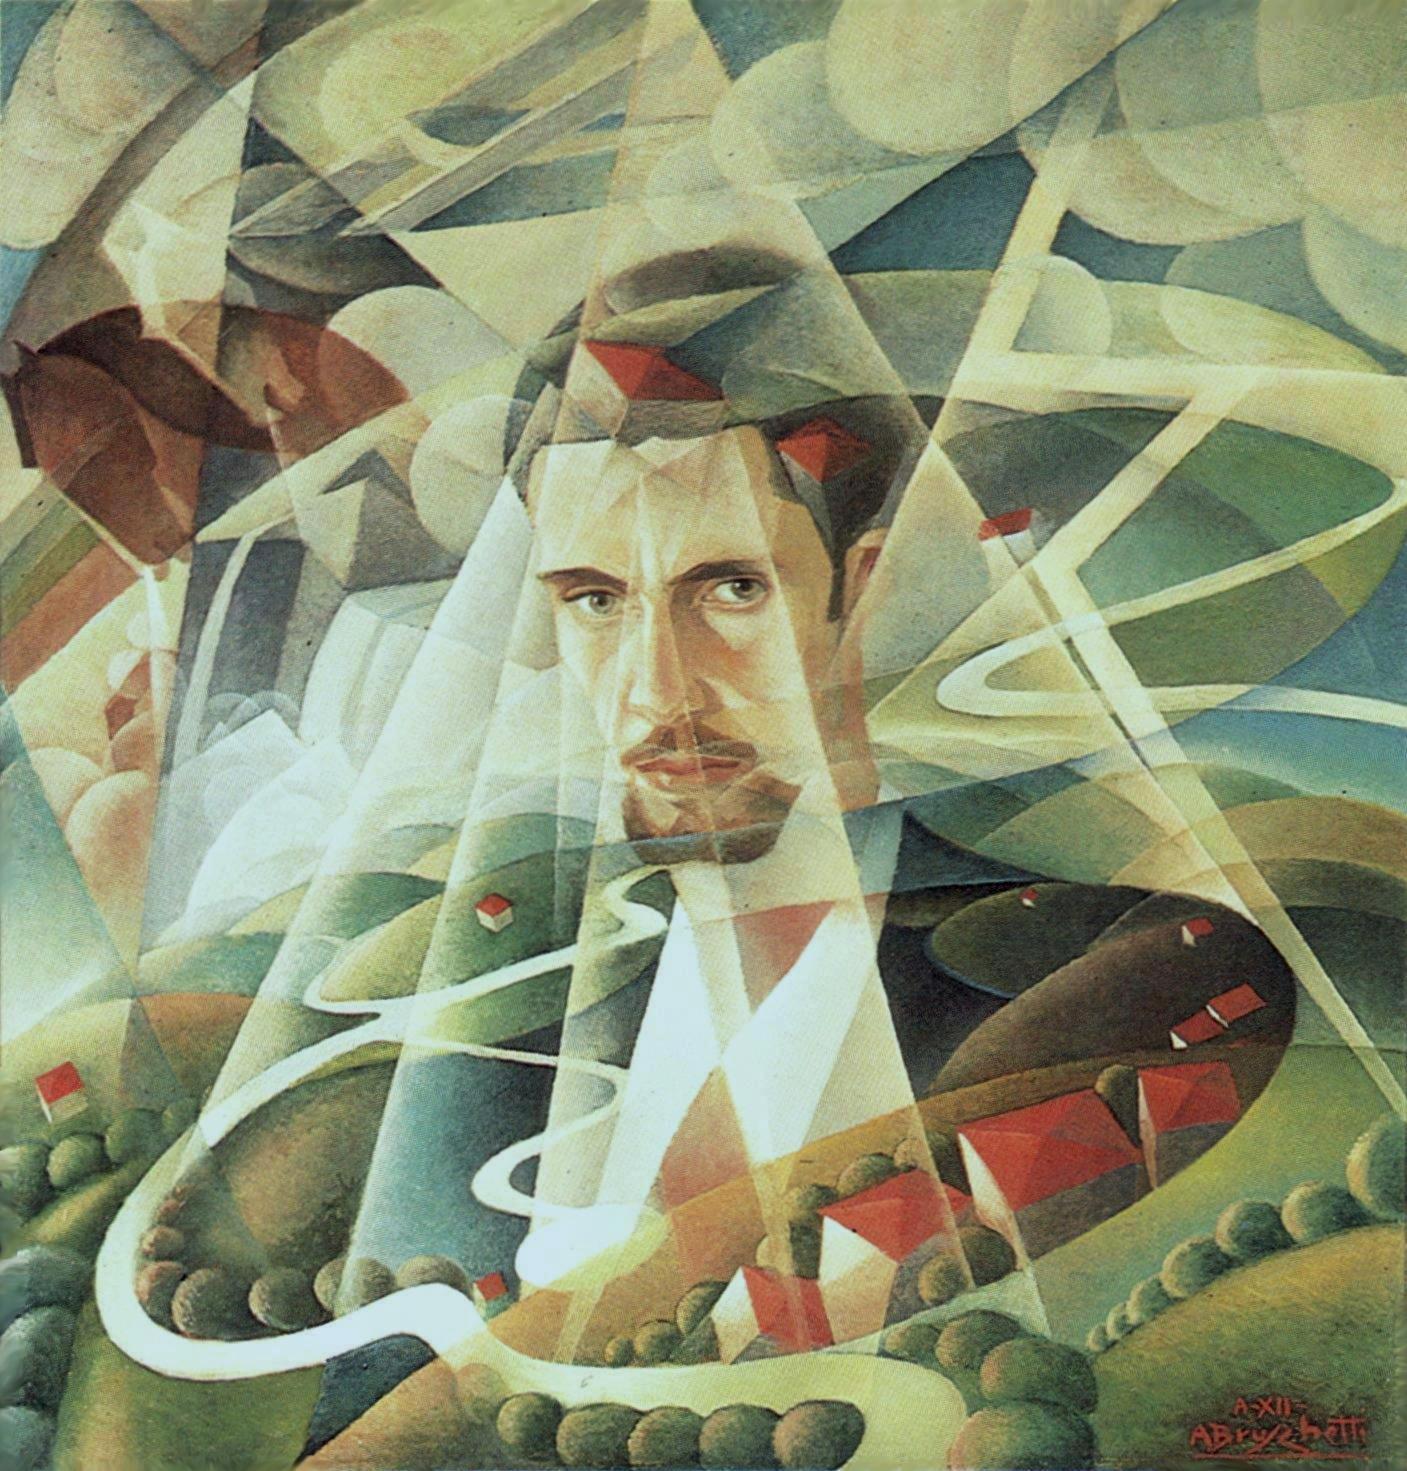 Alessandro Bruschetti Aereo autoritratto 1933 olio su tavola cm 77x73